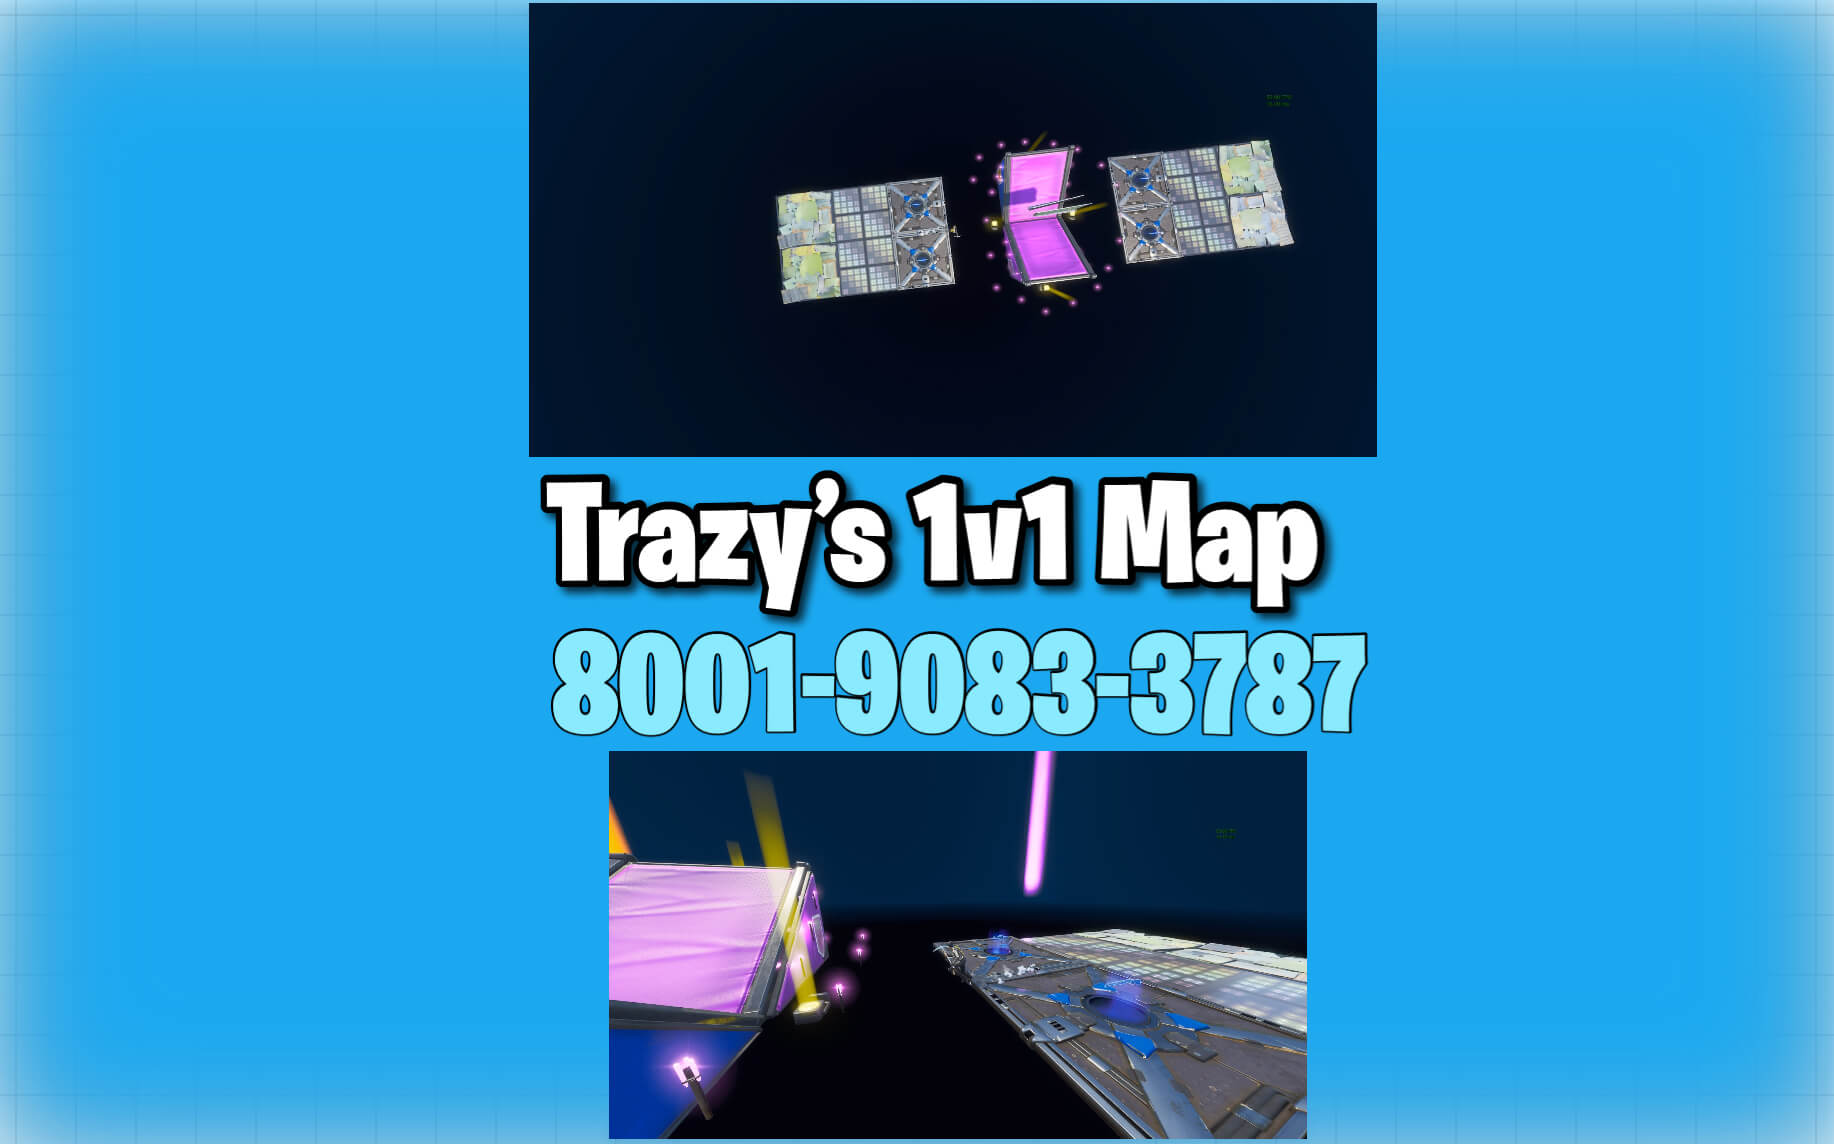 TRAZY'S 1V1 MAP image 3